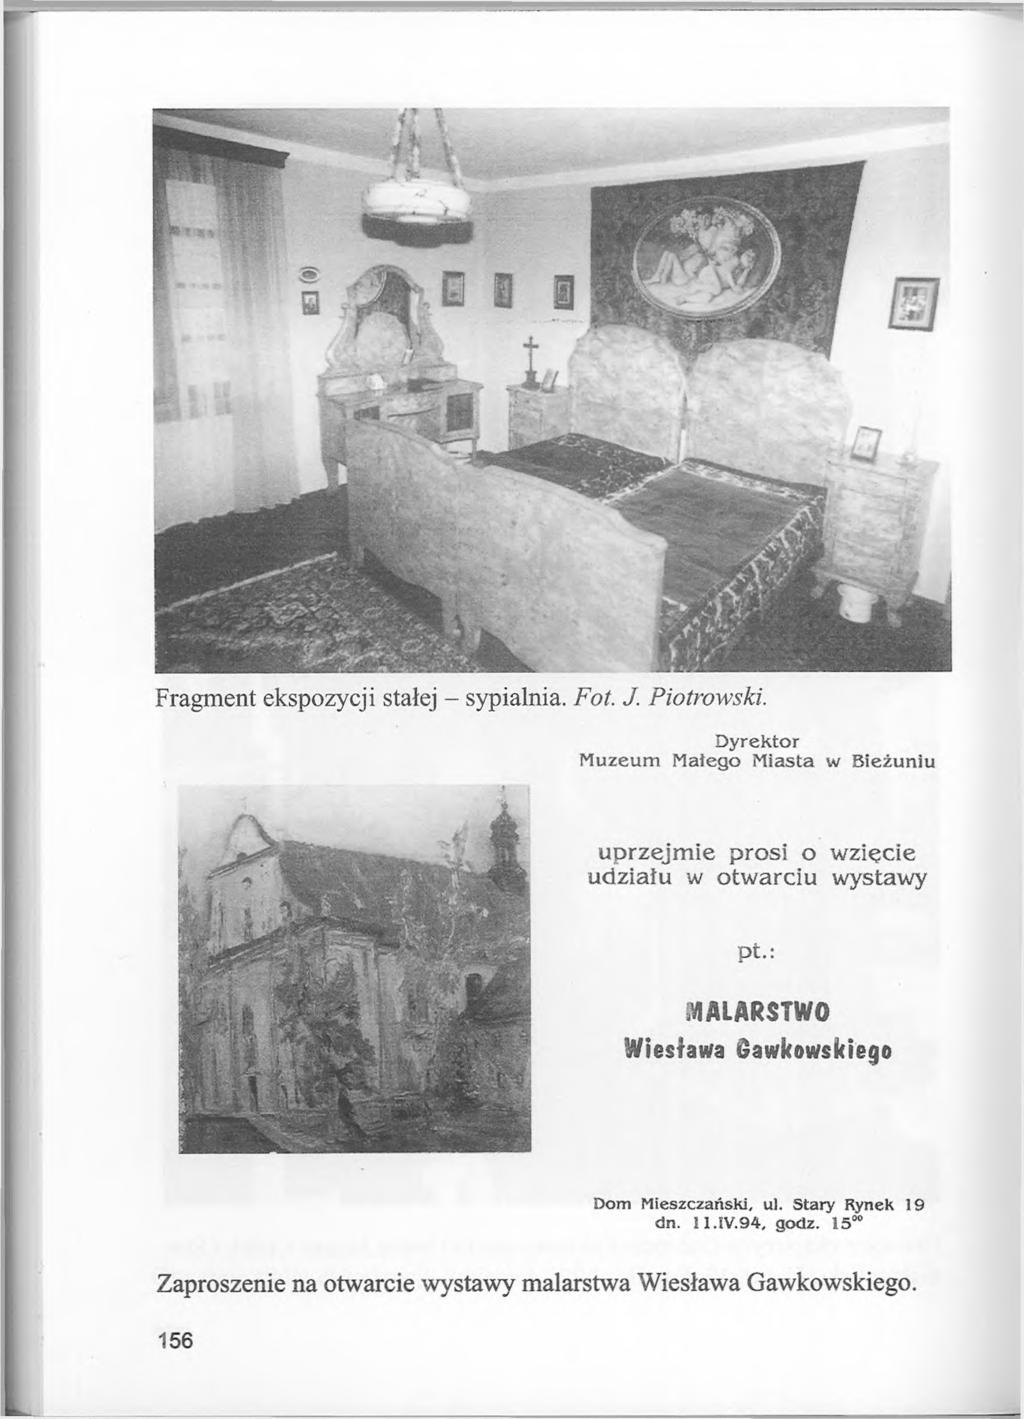 Fragment ekspozycji stałej - sypialnia. Fot. J. Piotrowski.